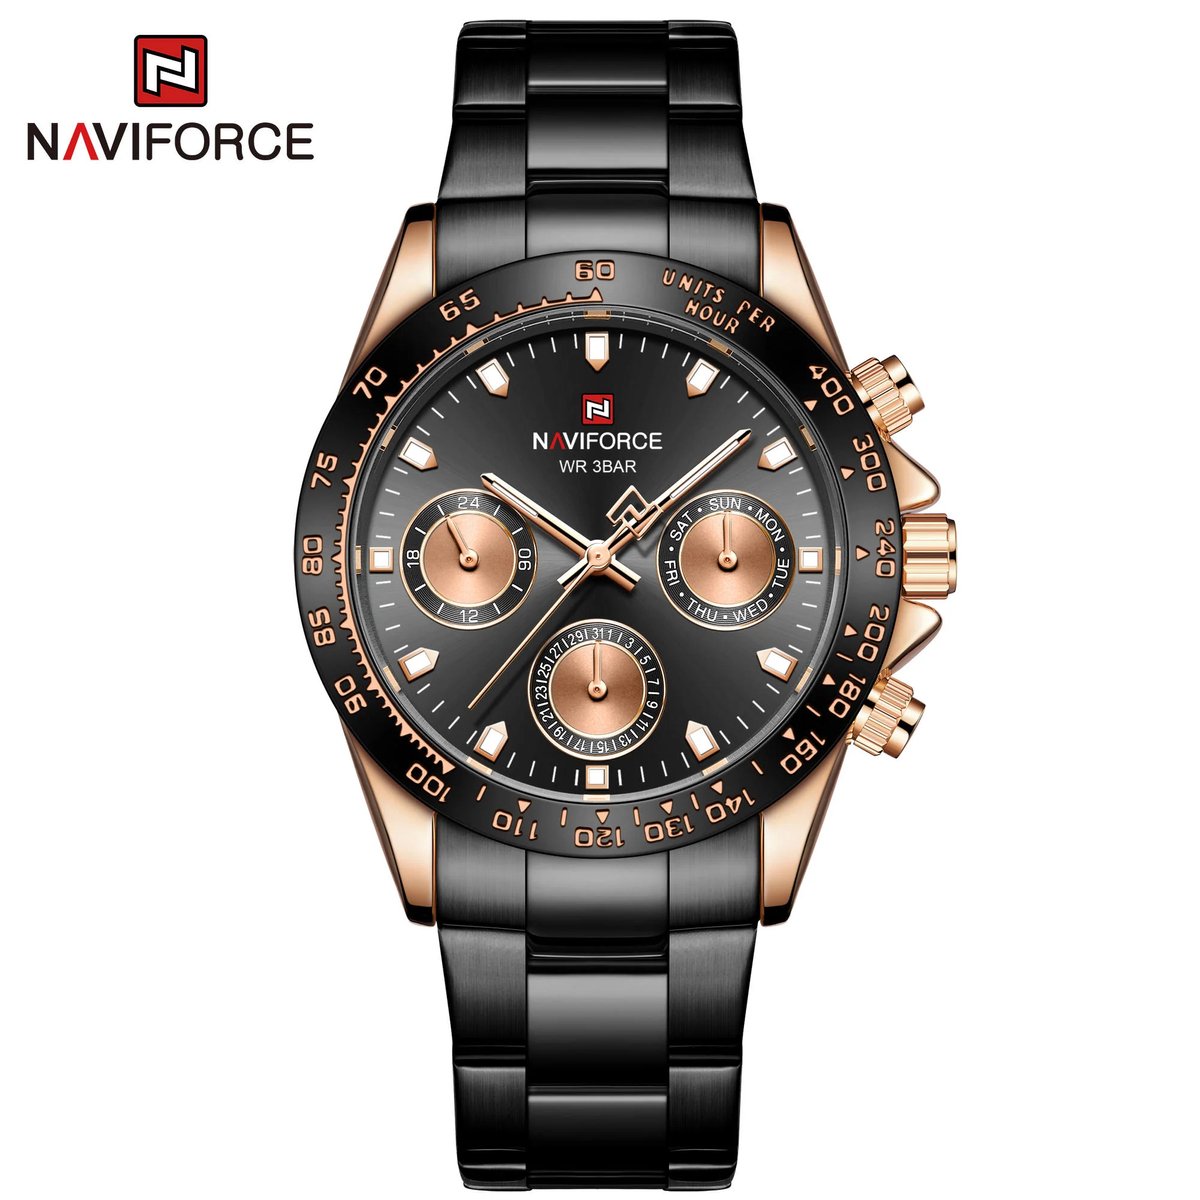 NAVIFORCE horloge voor mannen, met zwarte metalen polsband, gouden uurwerkkast en zwarte wijzerplaat ( model 9193 RGBB ), verpakt in mooie geschenkdoos